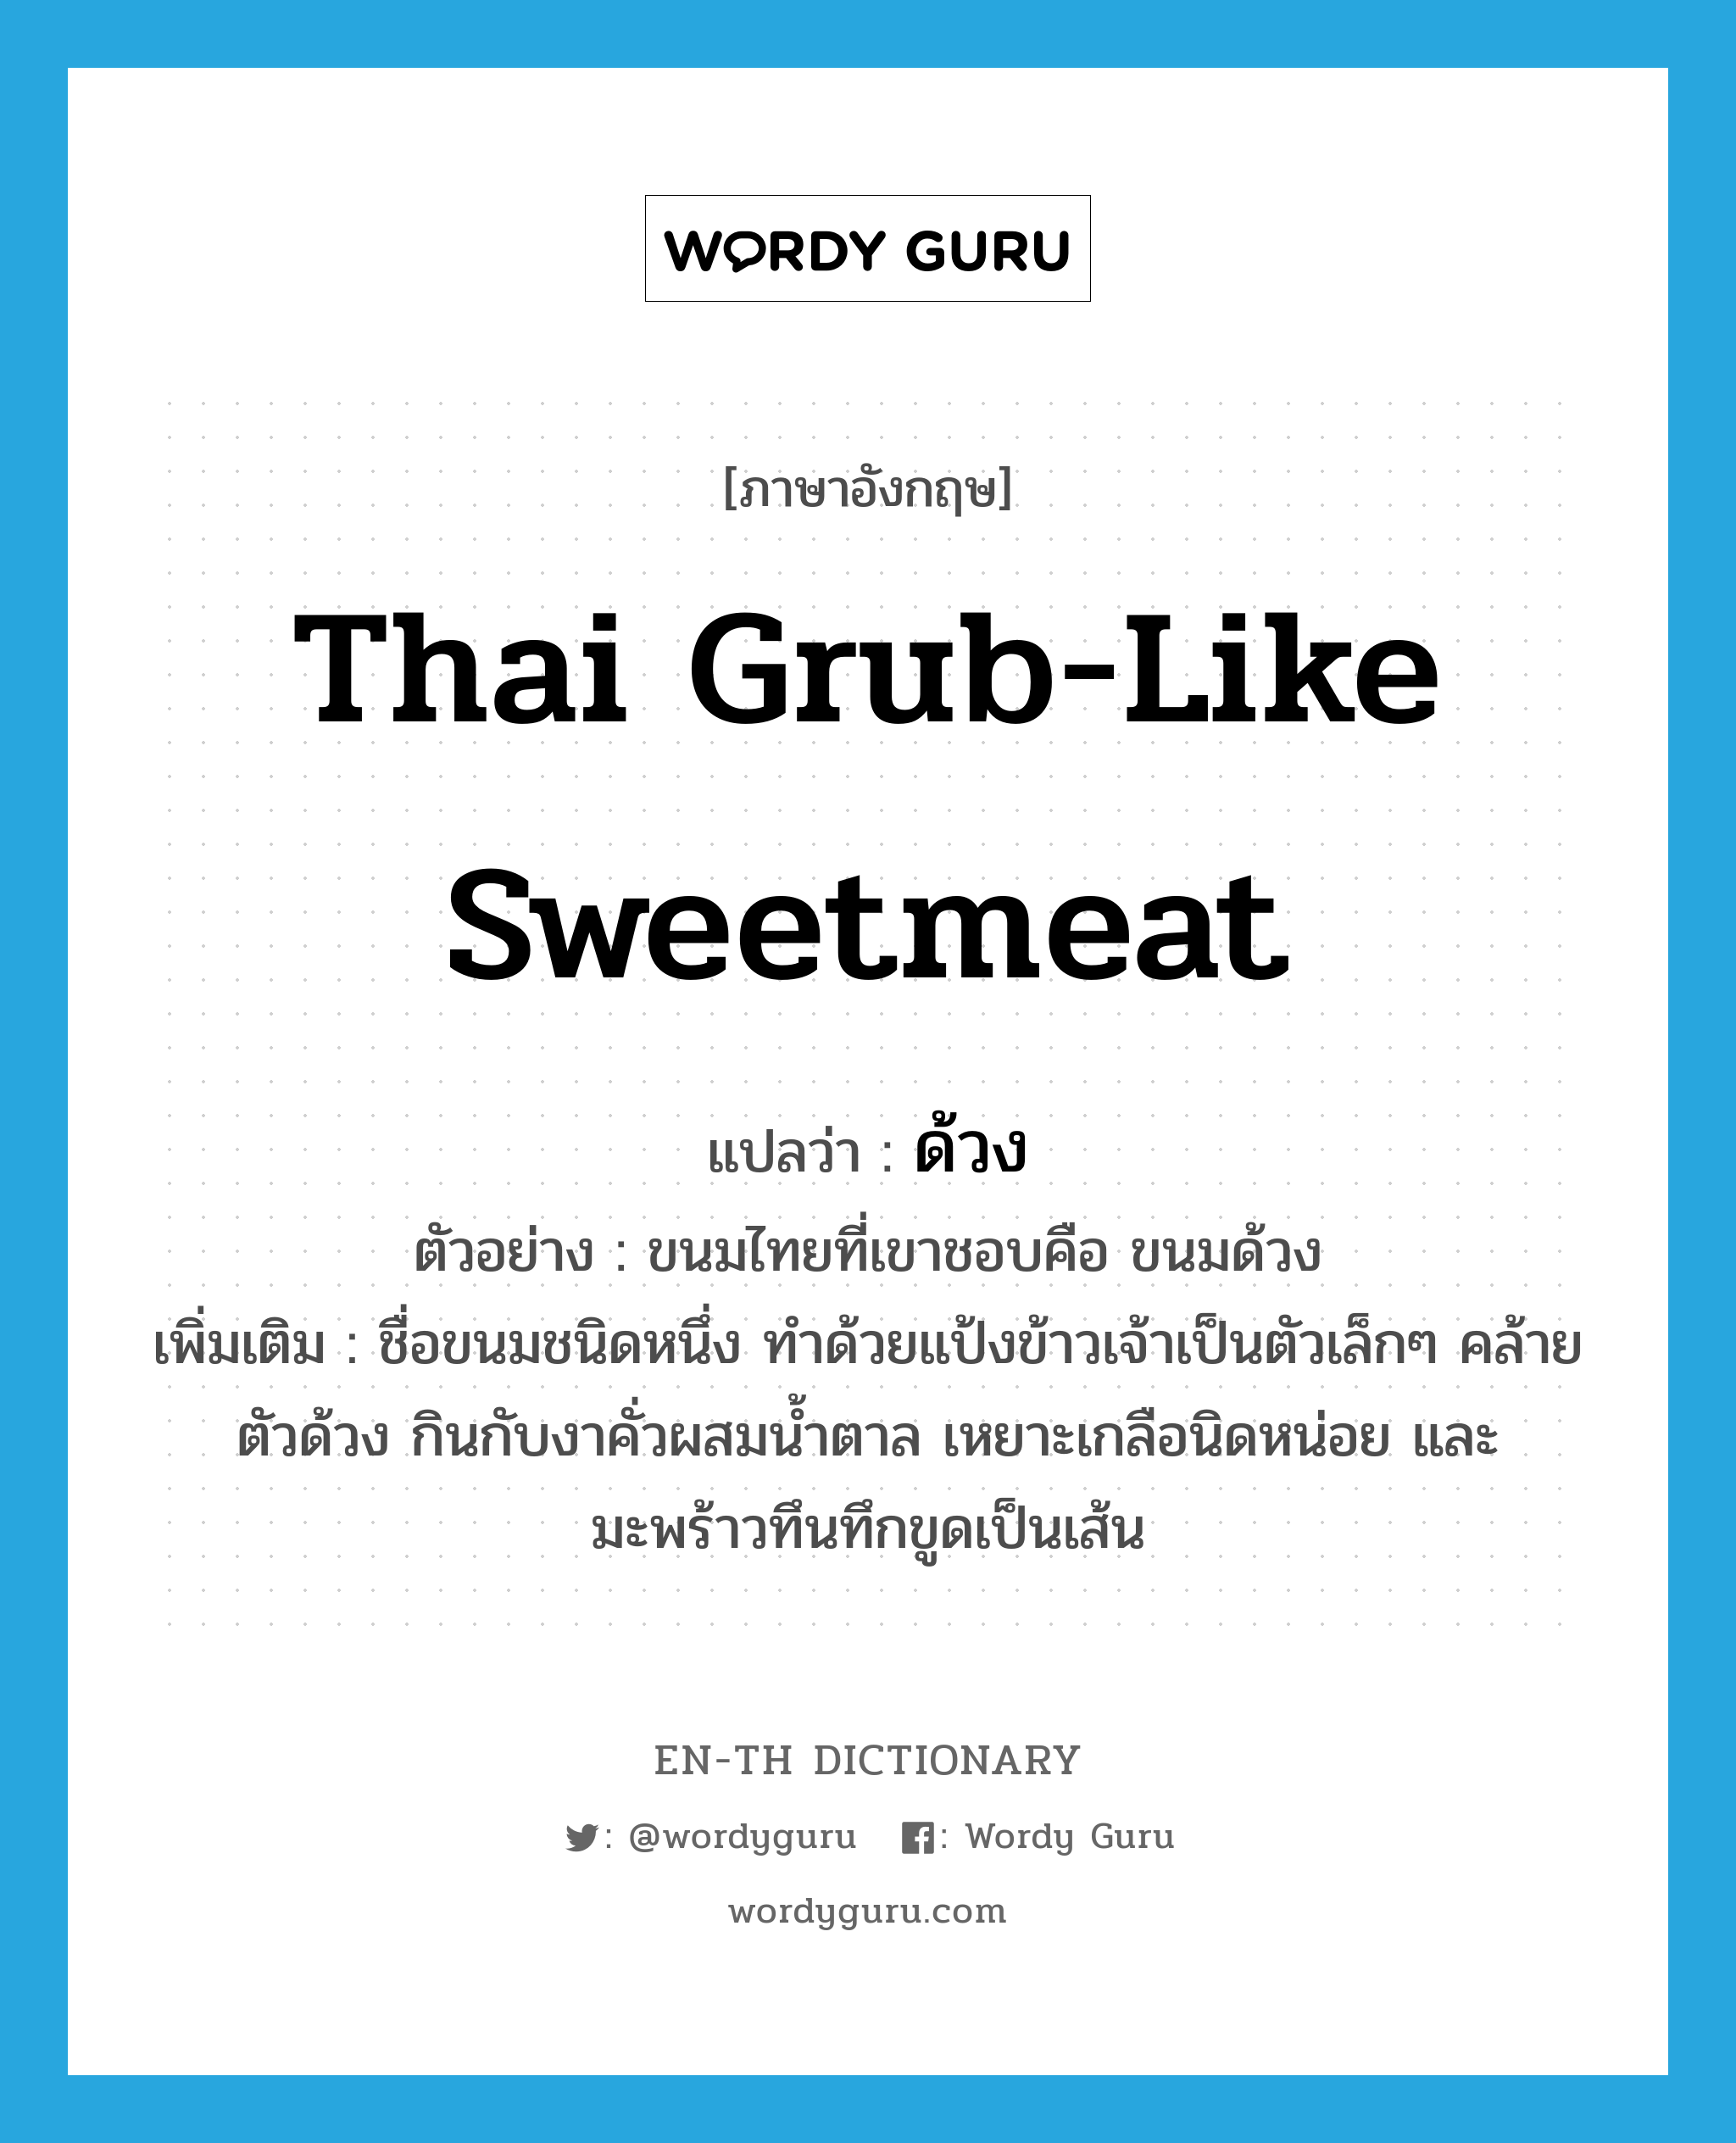 ด้วง ภาษาอังกฤษ?, คำศัพท์ภาษาอังกฤษ ด้วง แปลว่า Thai grub-like sweetmeat ประเภท N ตัวอย่าง ขนมไทยที่เขาชอบคือ ขนมด้วง เพิ่มเติม ชื่อขนมชนิดหนึ่ง ทำด้วยแป้งข้าวเจ้าเป็นตัวเล็กๆ คล้ายตัวด้วง กินกับงาคั่วผสมน้ำตาล เหยาะเกลือนิดหน่อย และมะพร้าวทึนทึกขูดเป็นเส้น หมวด N